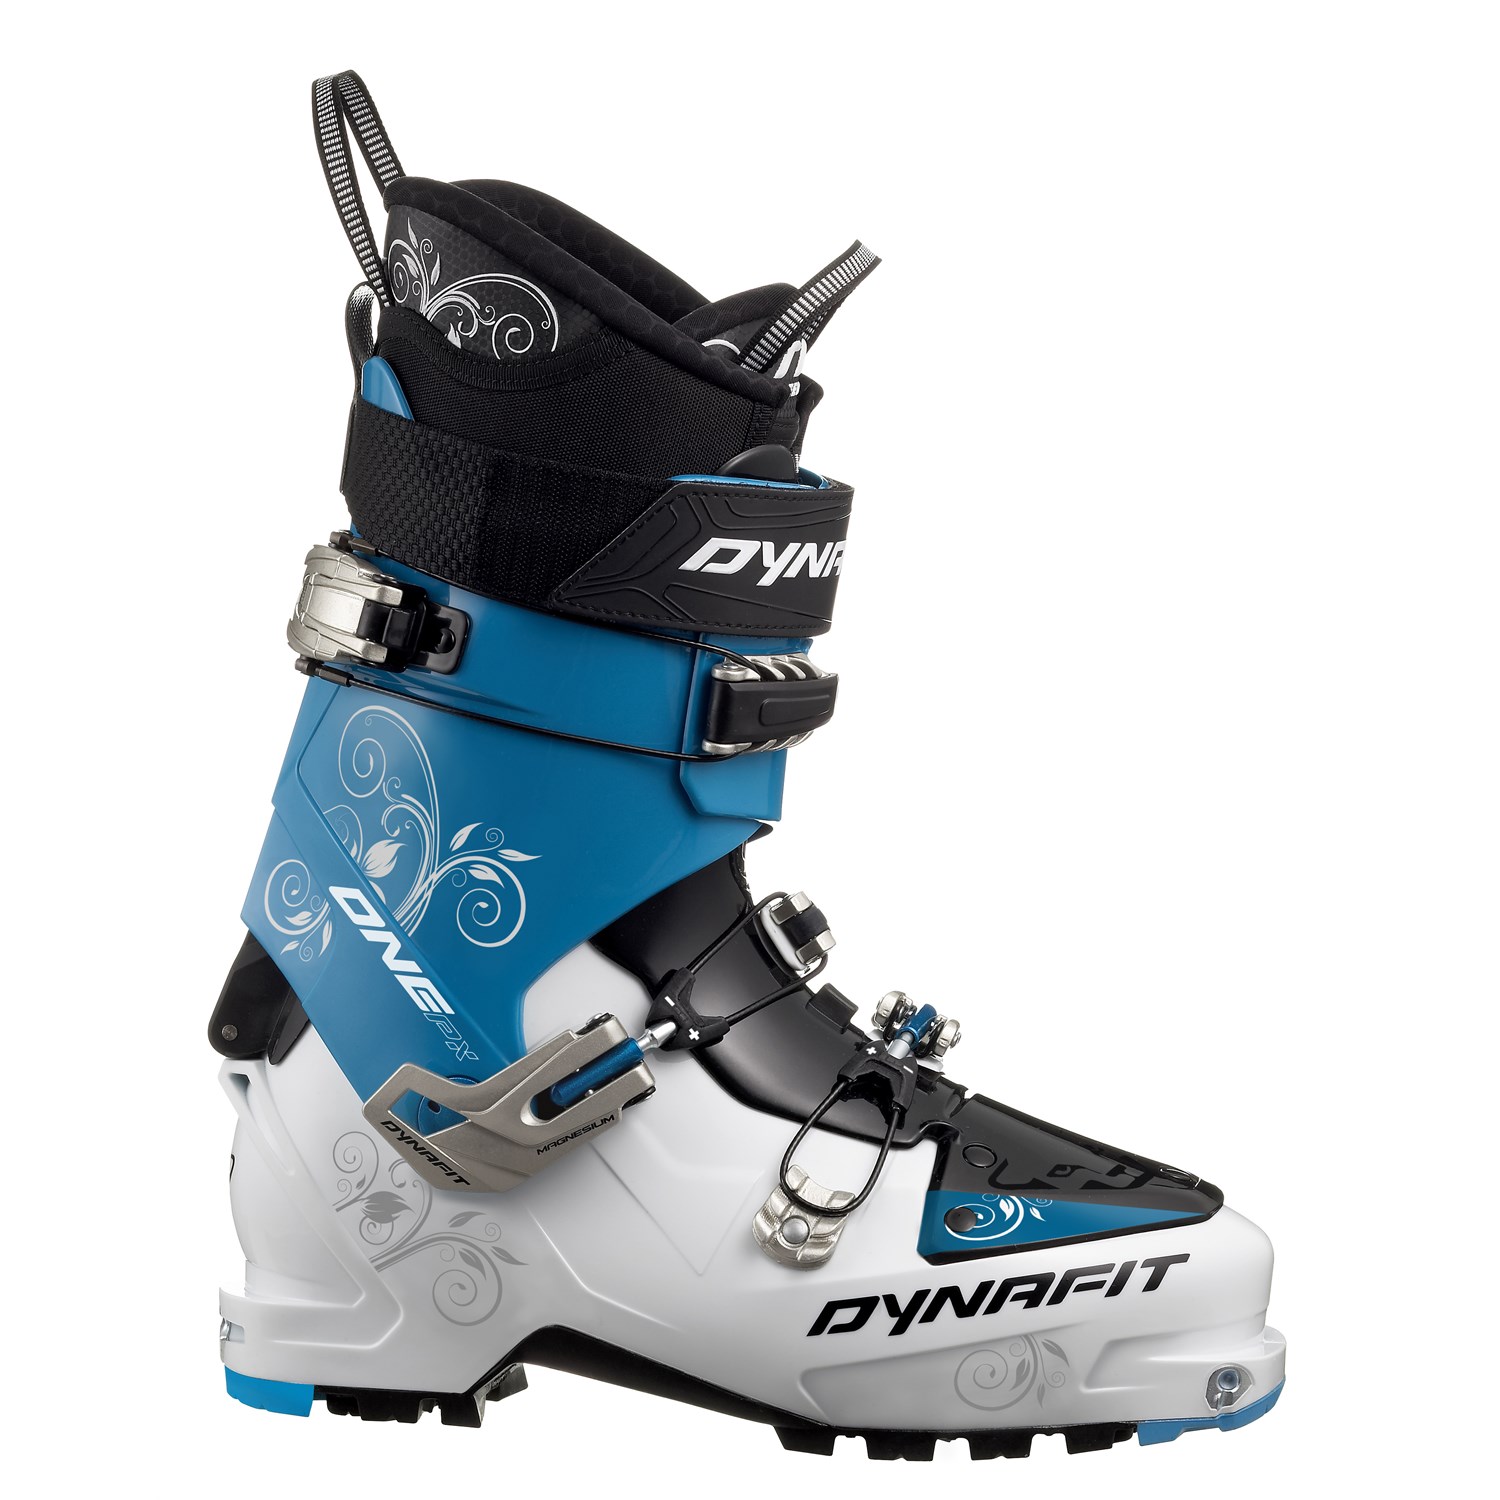 Dynafit One PX TF Alpine Touring Ski Boots - Women's 2013 | evo